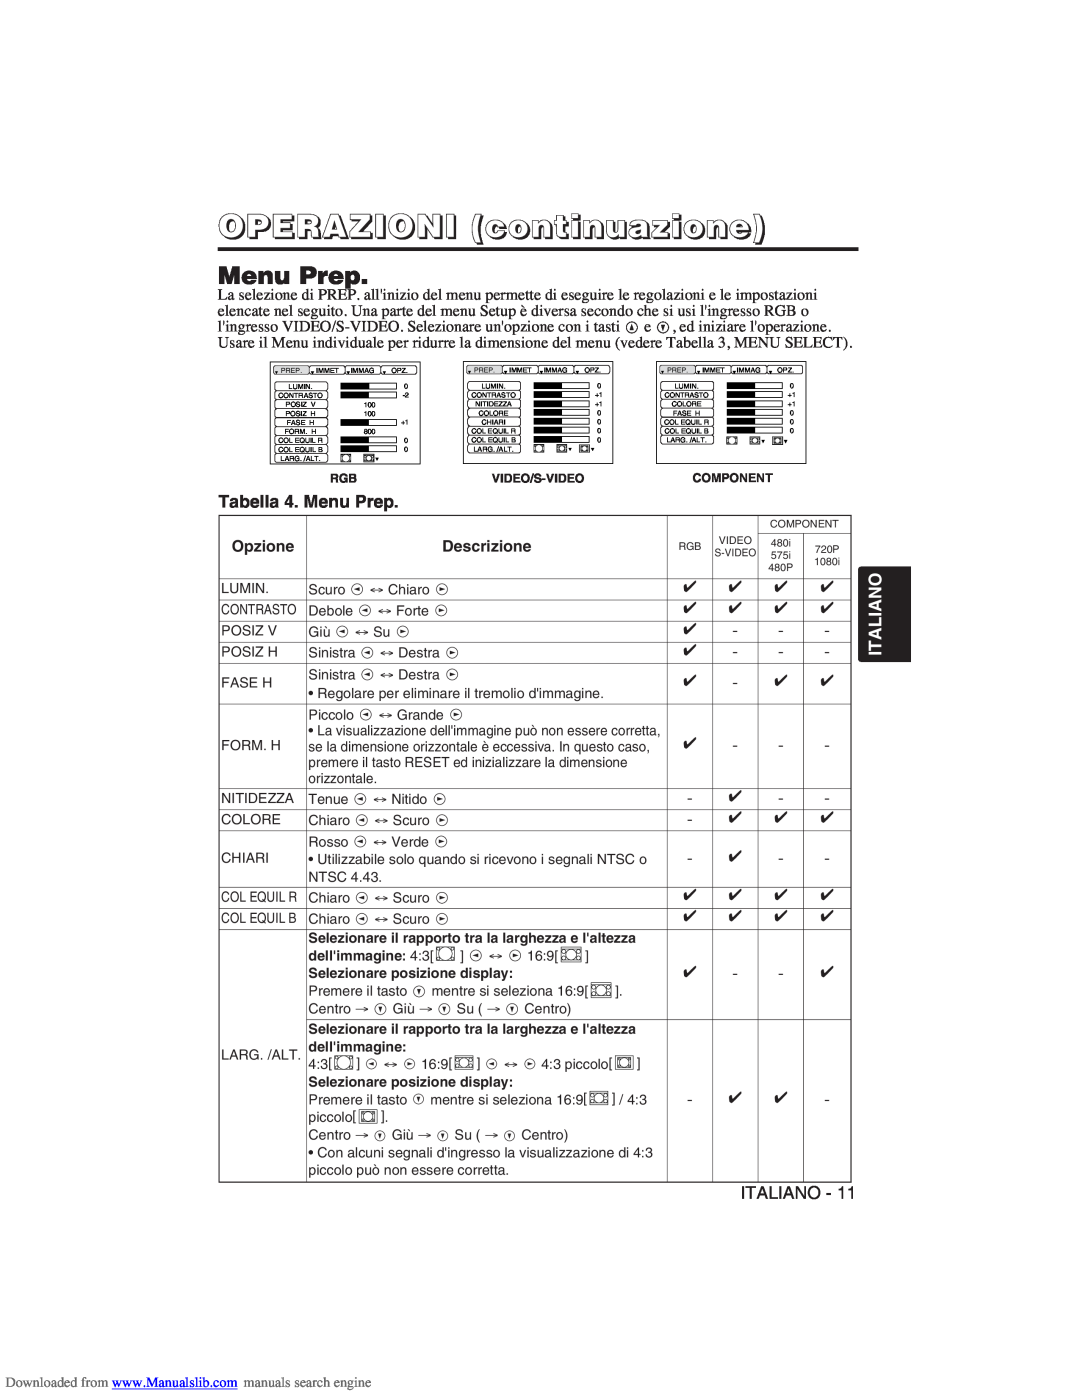 Hitachi CP-X275W user manual Tabella 4. Menu Prep, OPERAZIONI continuazione, Italiano 